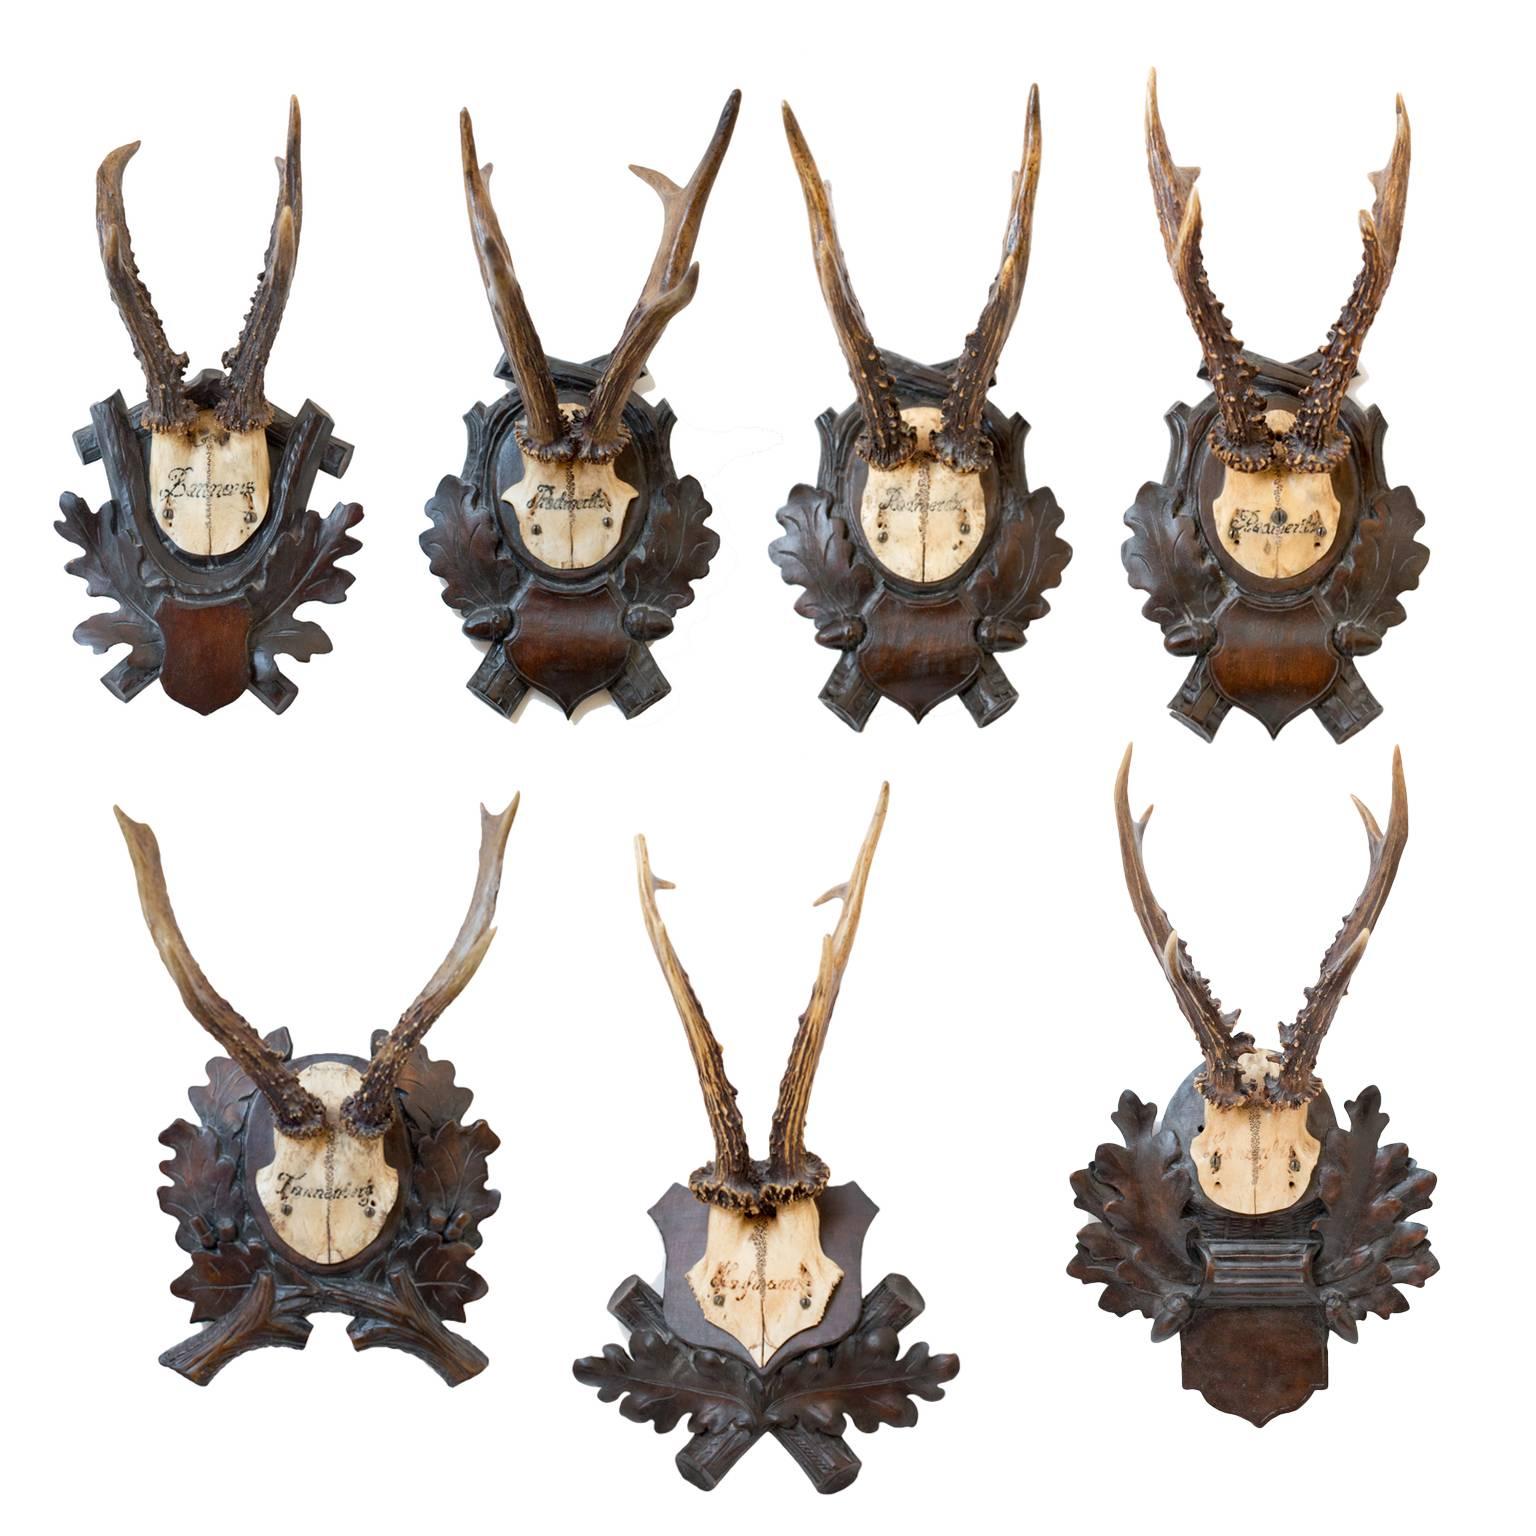 Antler 19th Century Habsburg Roe Deer Trophies from Eckartsau Castle, Austria